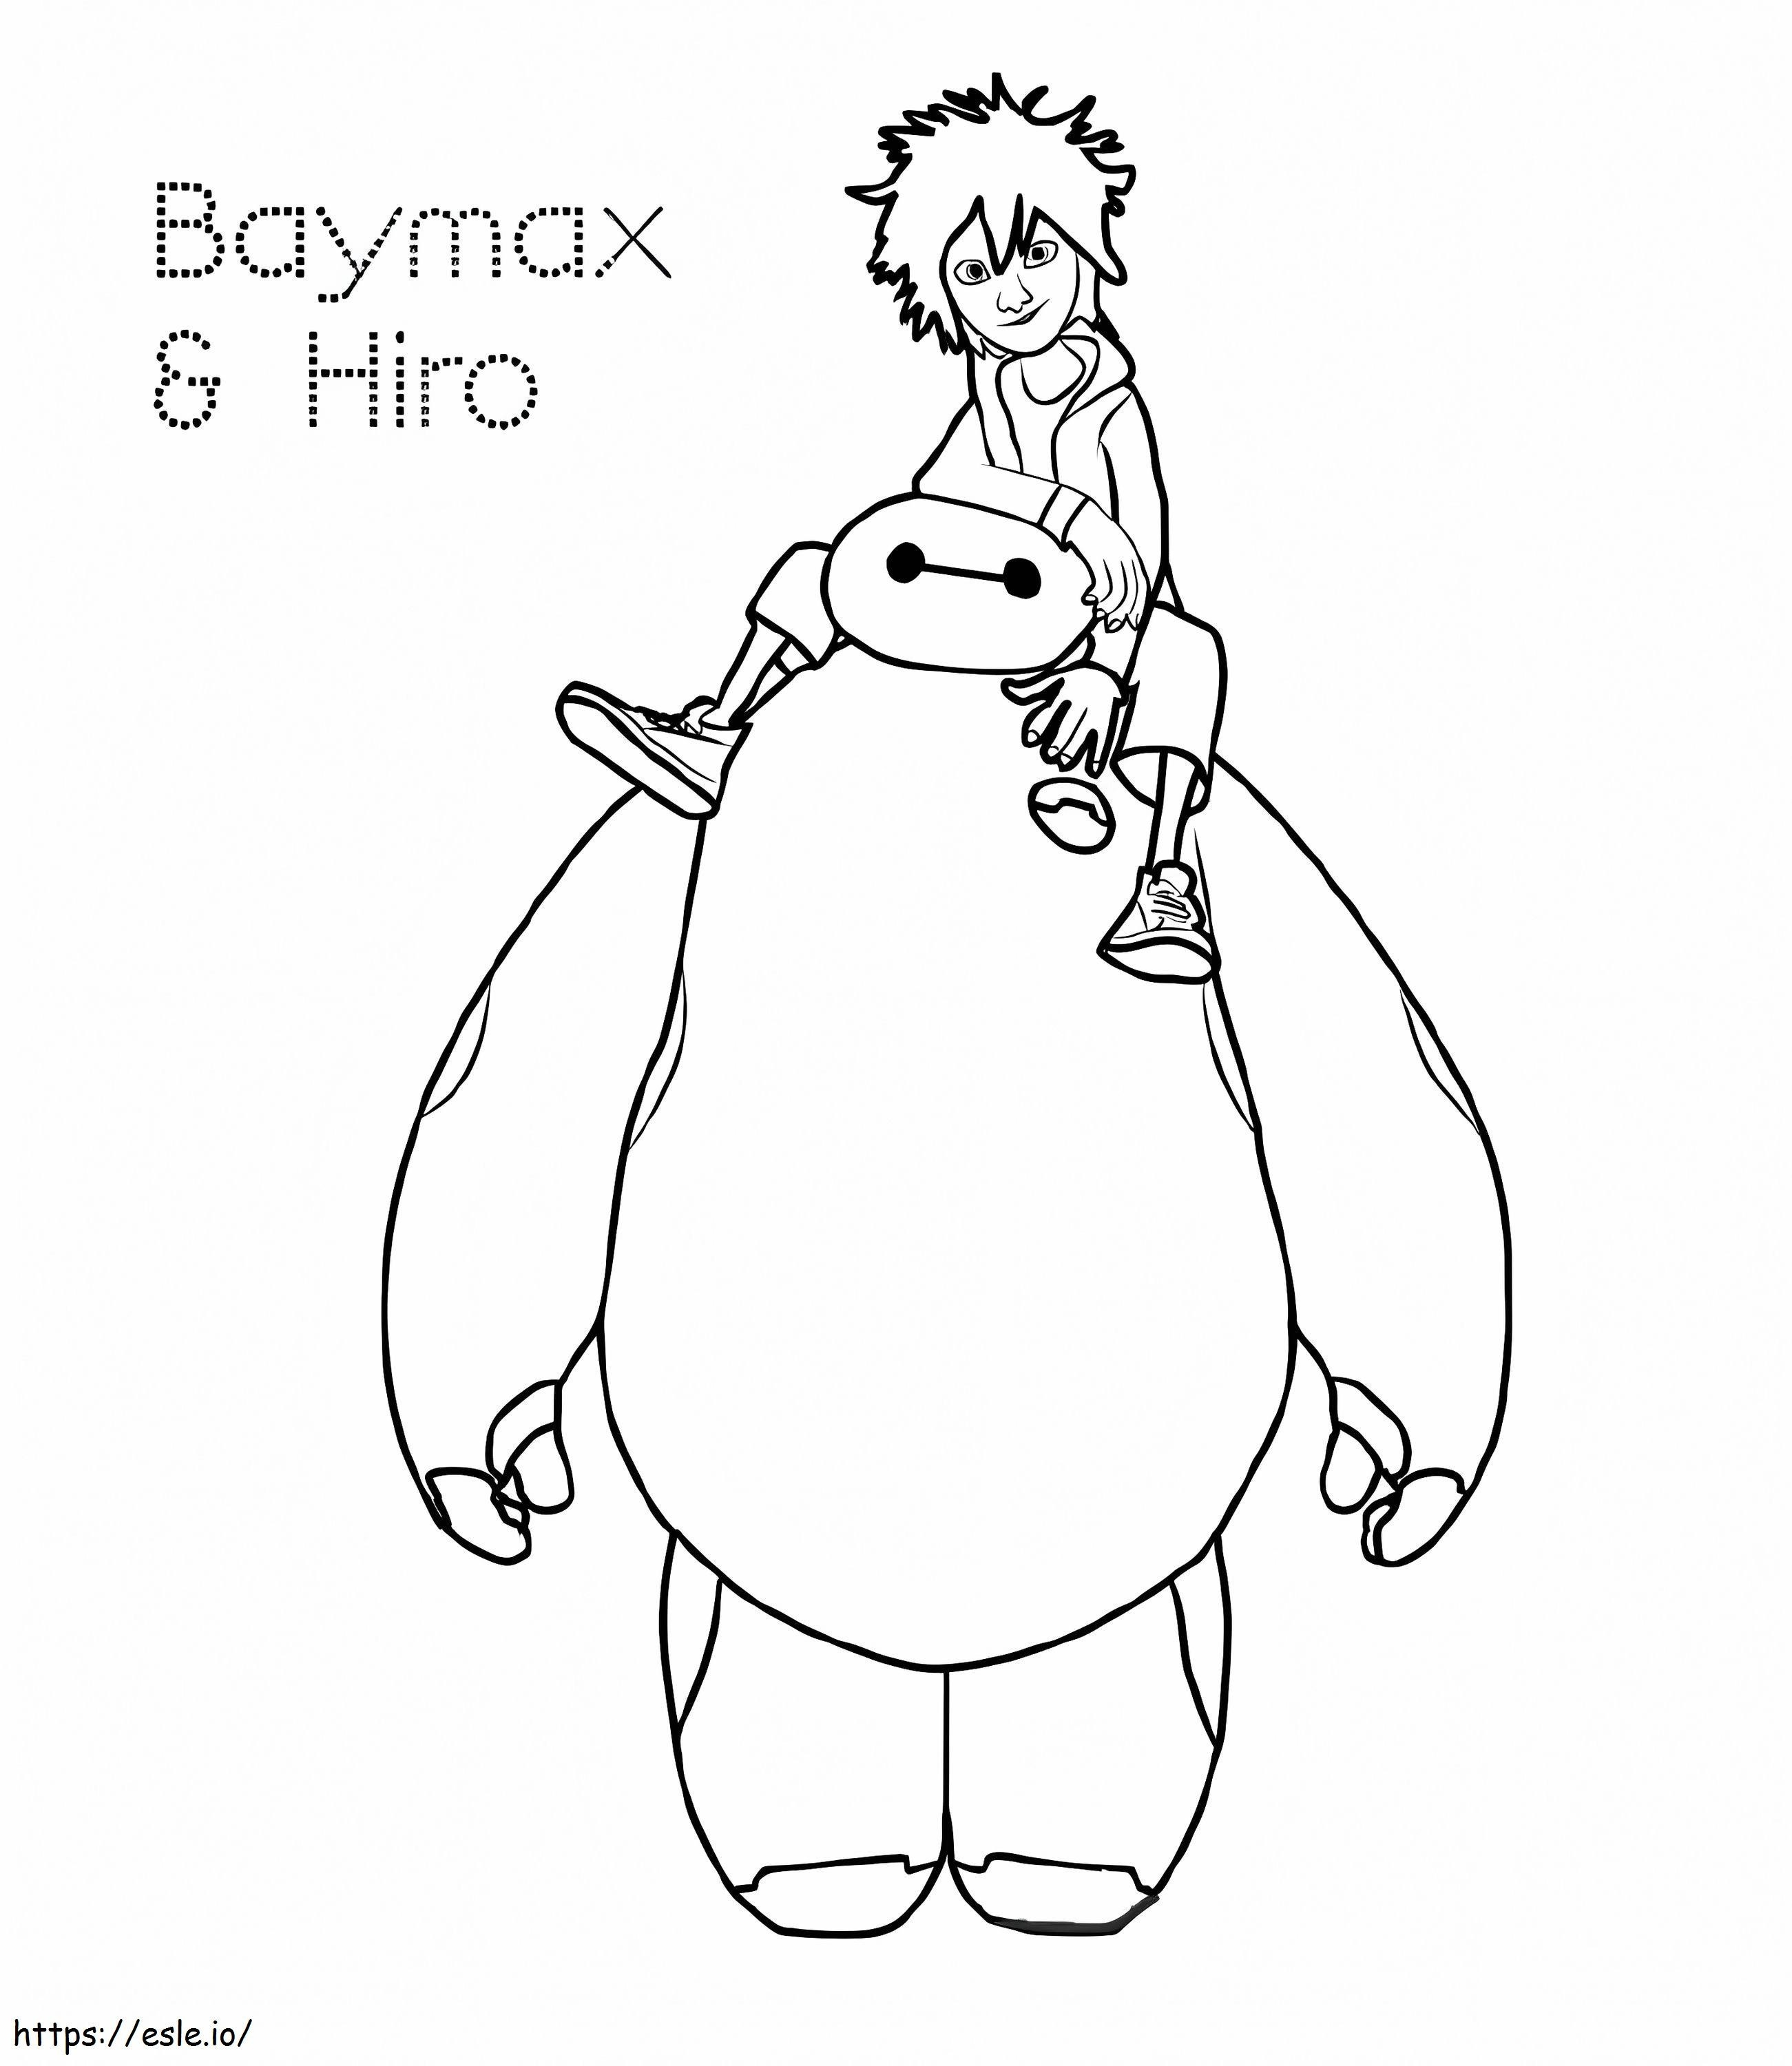 Hiro e Baymax da colorare